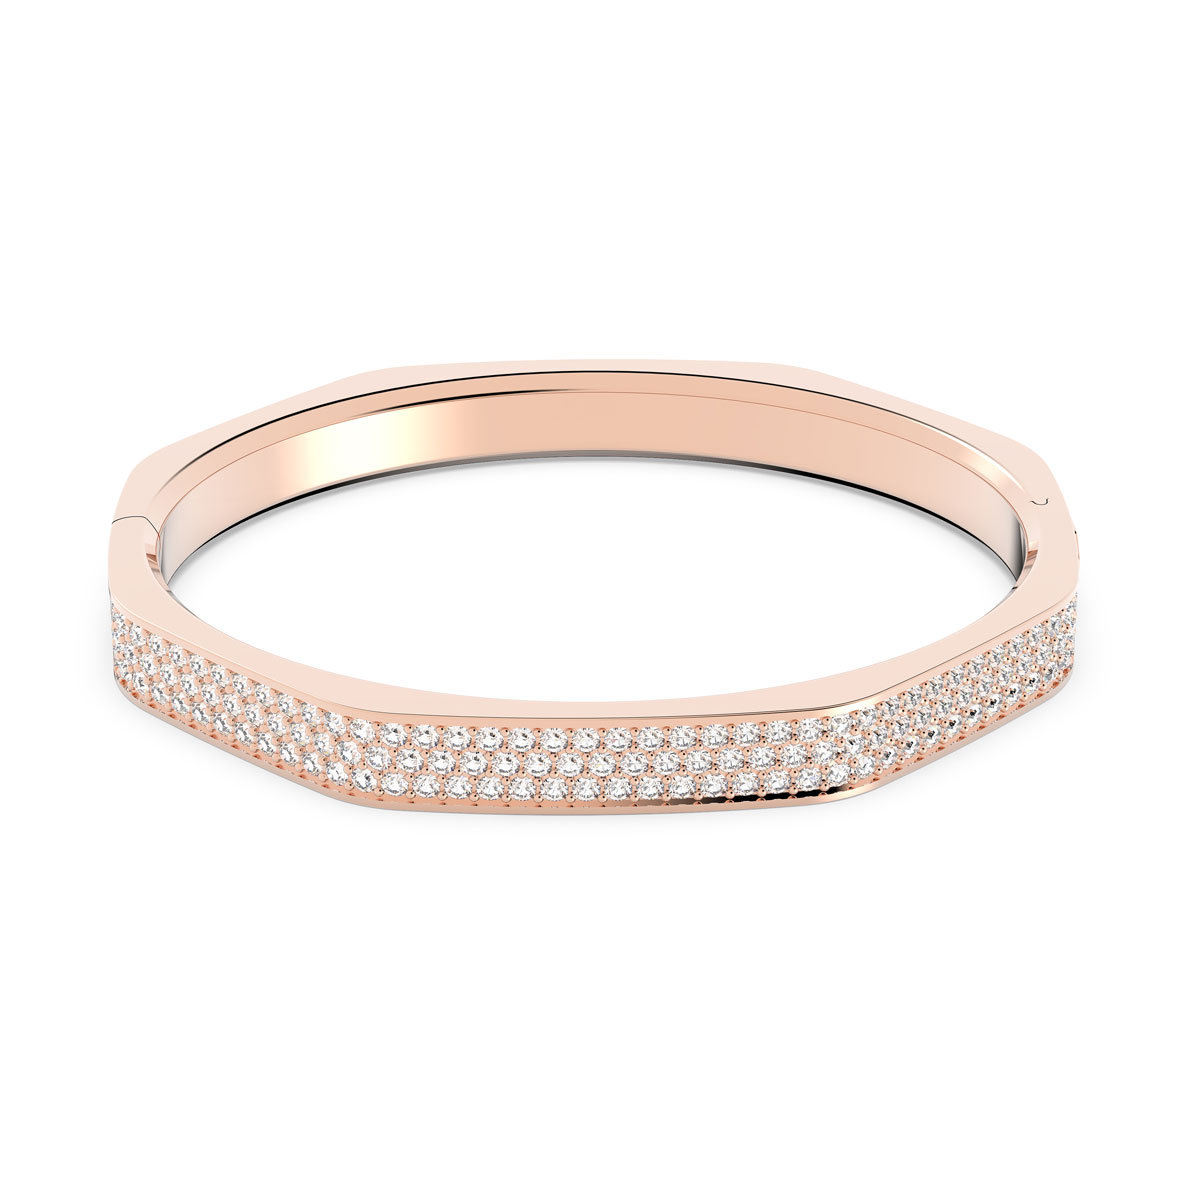 Swarovski Jewelry Bracelet Dextera, Bangle Octagonal Pave Crystal, Rose Gold L